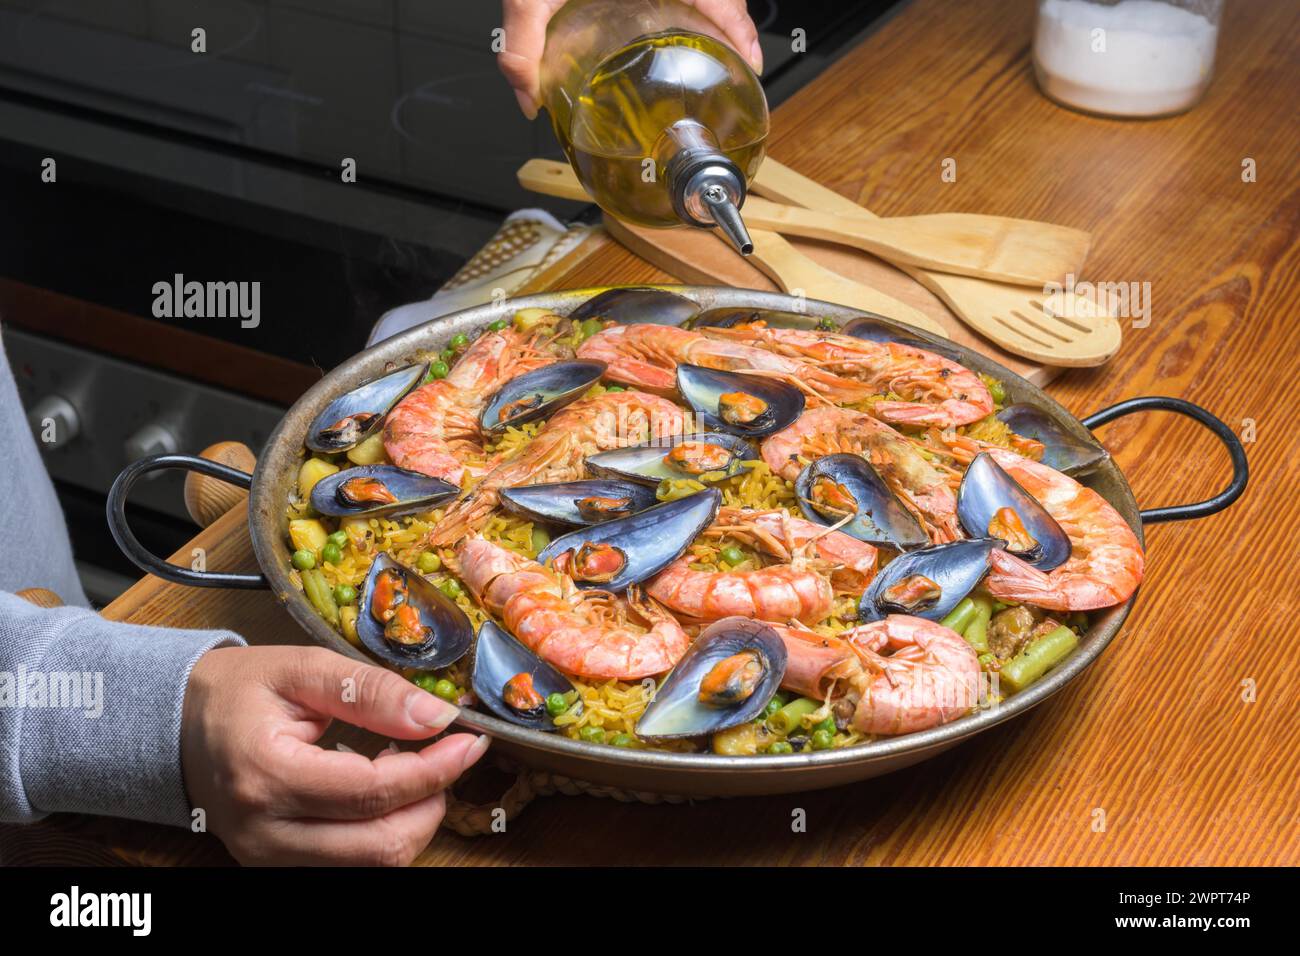 Füllen Sie Olivenöl in eine Paella mit Meeresfrüchten, um die Aromen dieses klassischen spanischen Gerichts zu verstärken, typisch spanische Küche, Mallorca, Balearen, Spanien Stockfoto